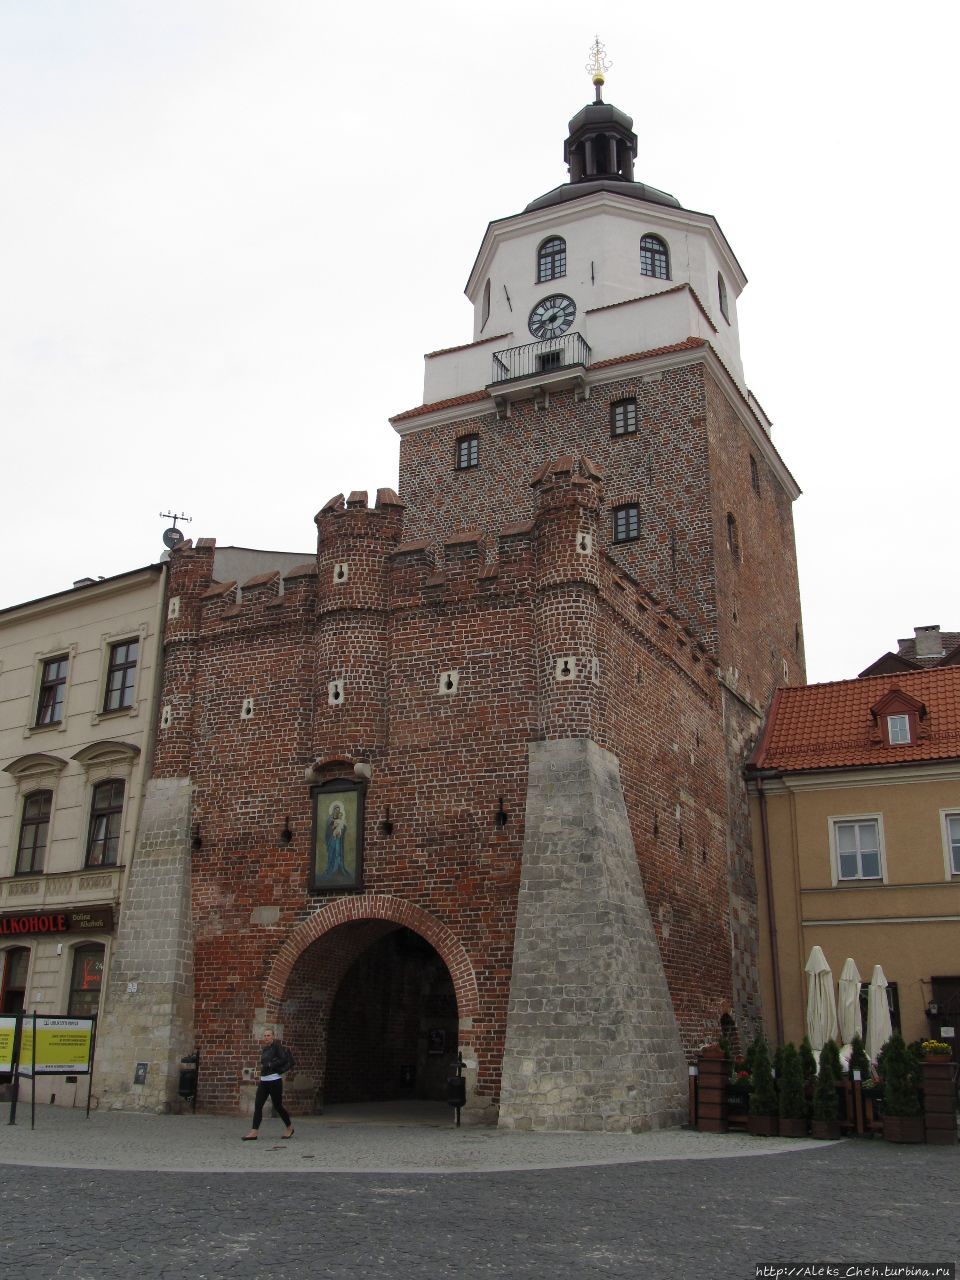 Brama Krakowska — один из символов города Люблин, Польша